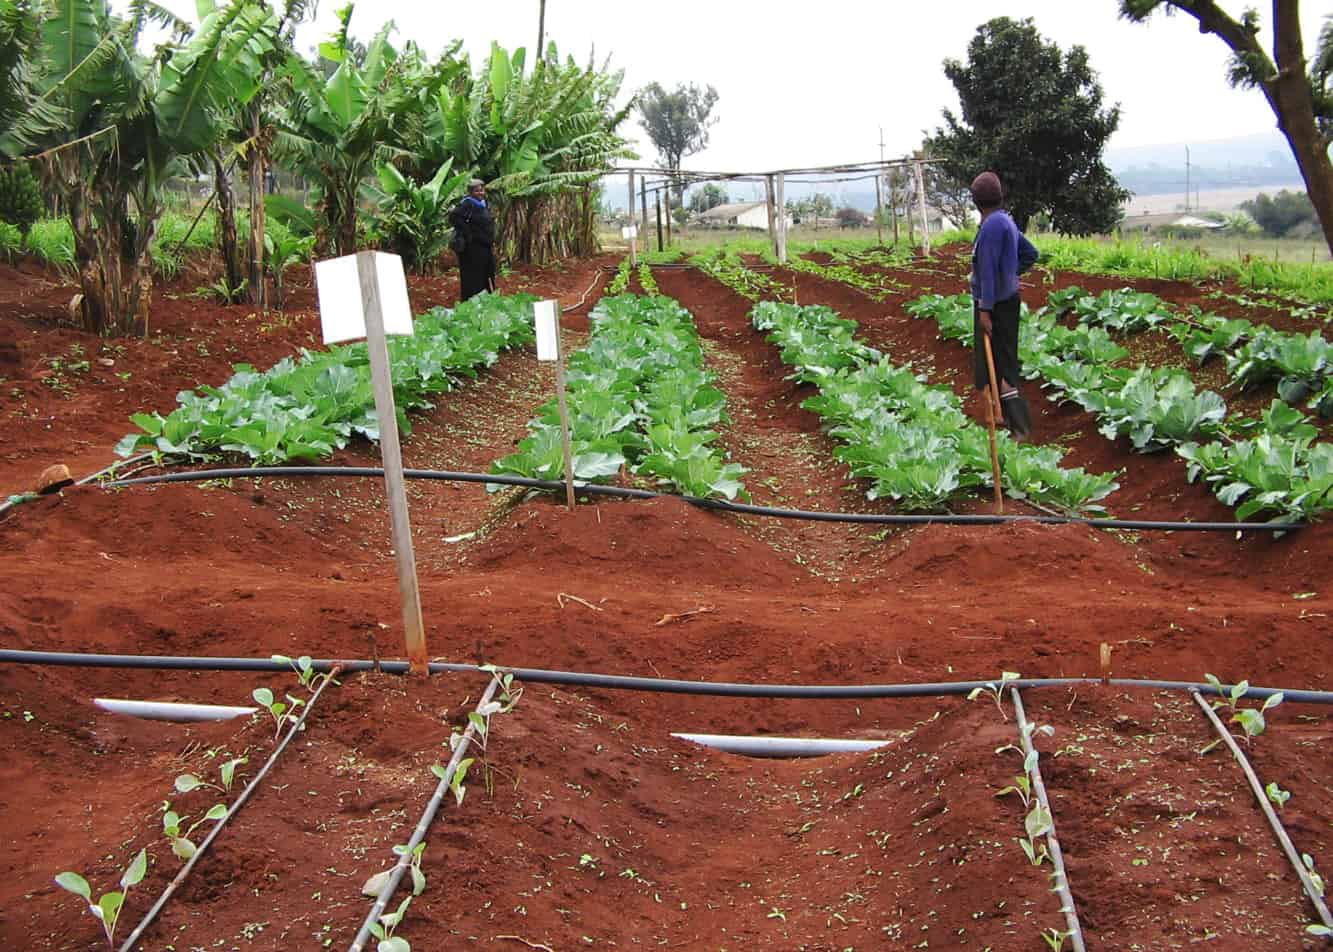 Waadada Farm in Kenya